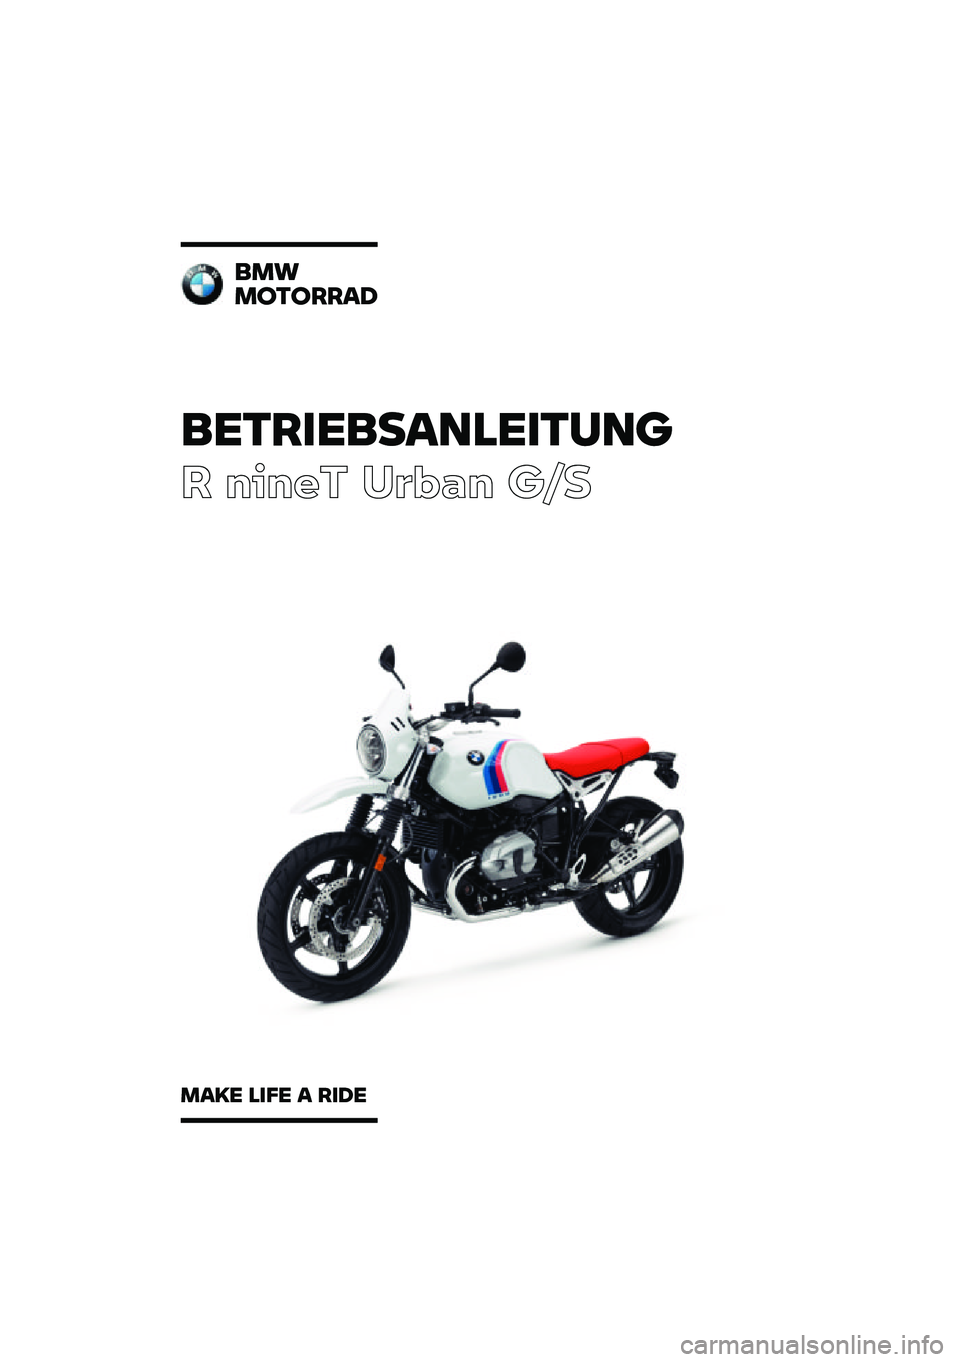 BMW MOTORRAD R NINE T URVAN G/S 2020  Betriebsanleitung (in German) ���������\b�	�
�����	�\f
� ����� ��\b�	�
� ��\f�
��
�
�
������\b�
�
�\b�� �
��� �\b ���� 